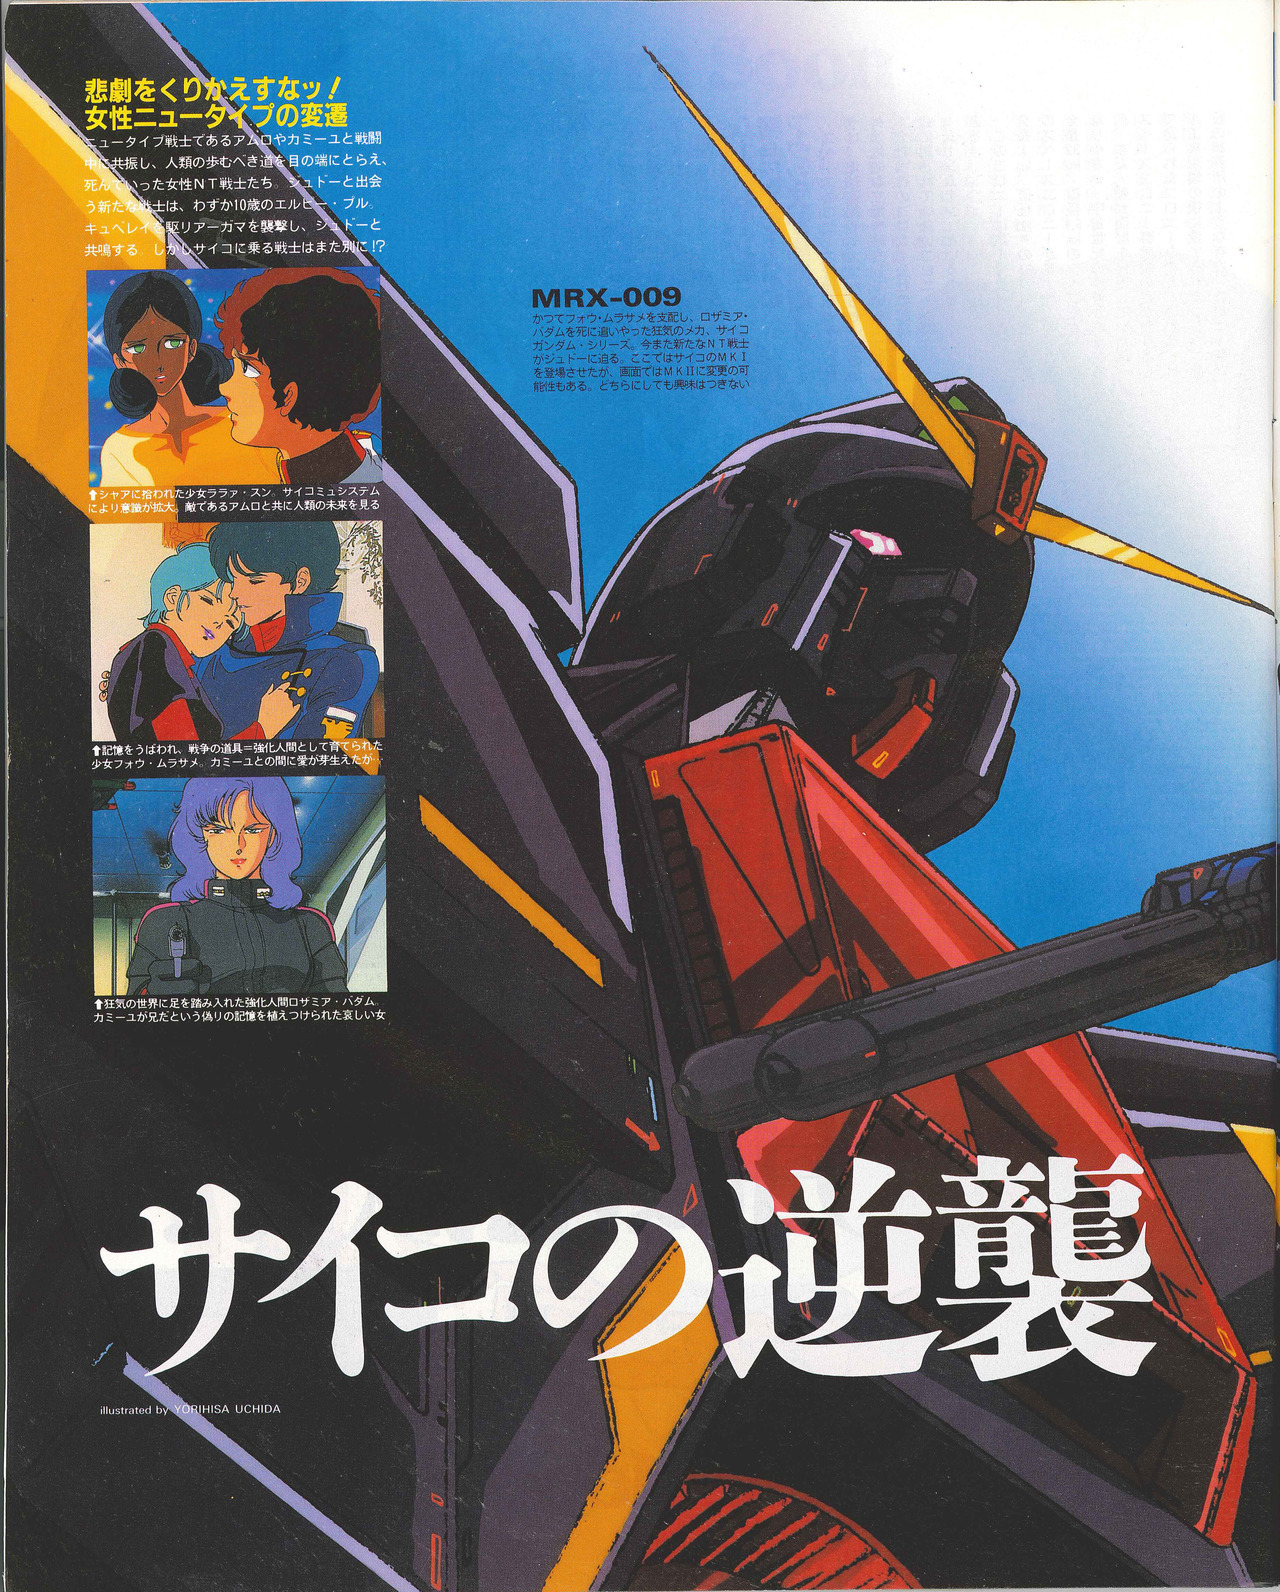 0以上強化人間物語another Z Gundam Story Hd壁紙画像のベストセレクションfhd